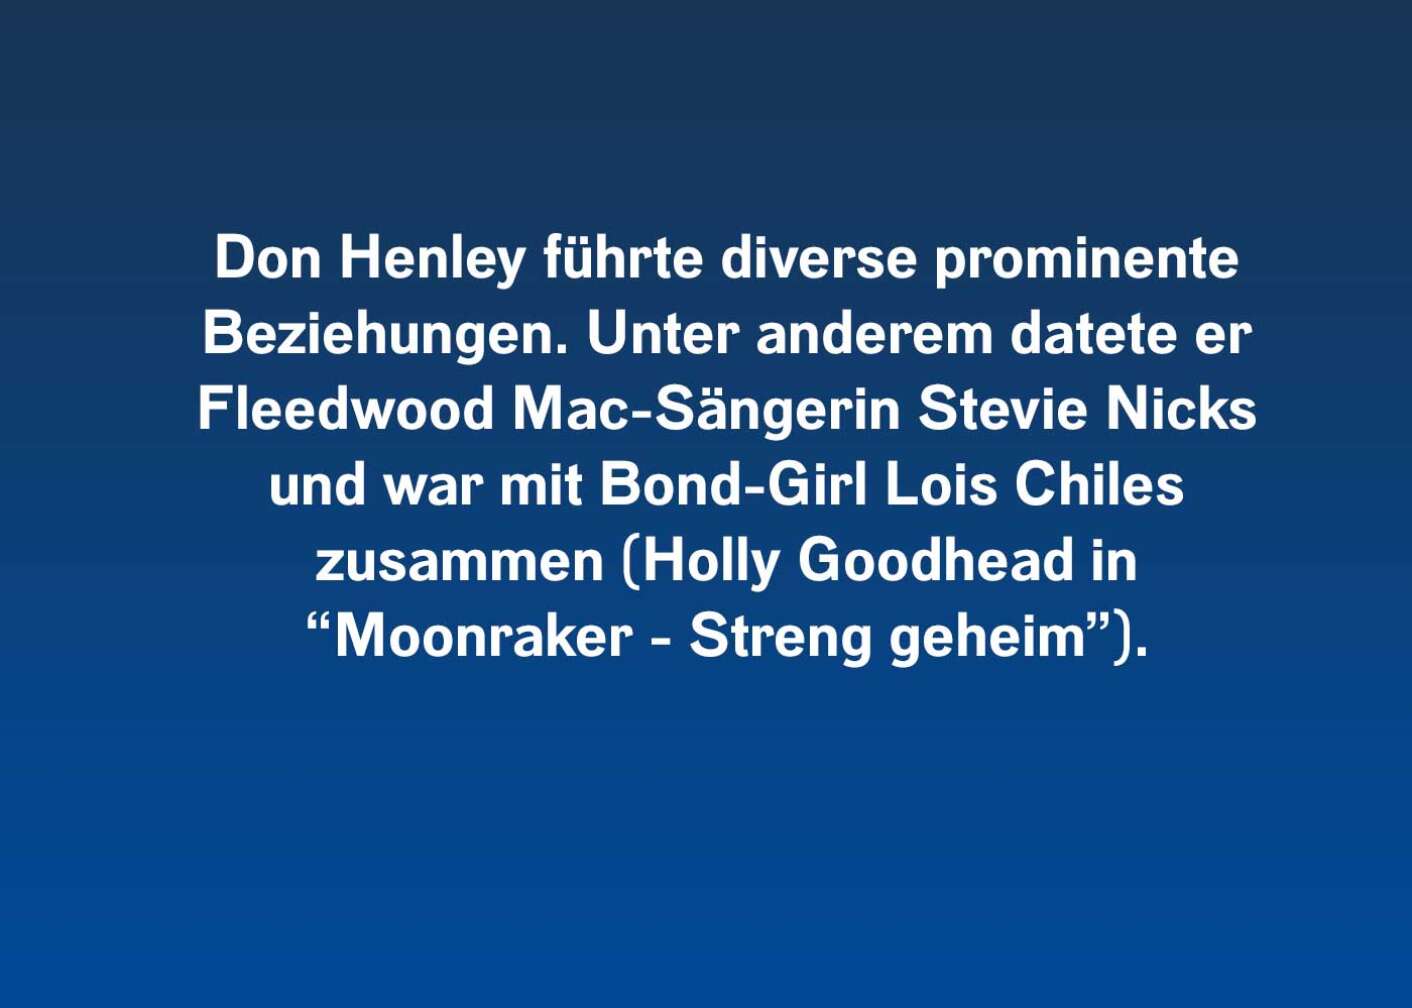 10 Fakten über Don Henley (führte diverse)